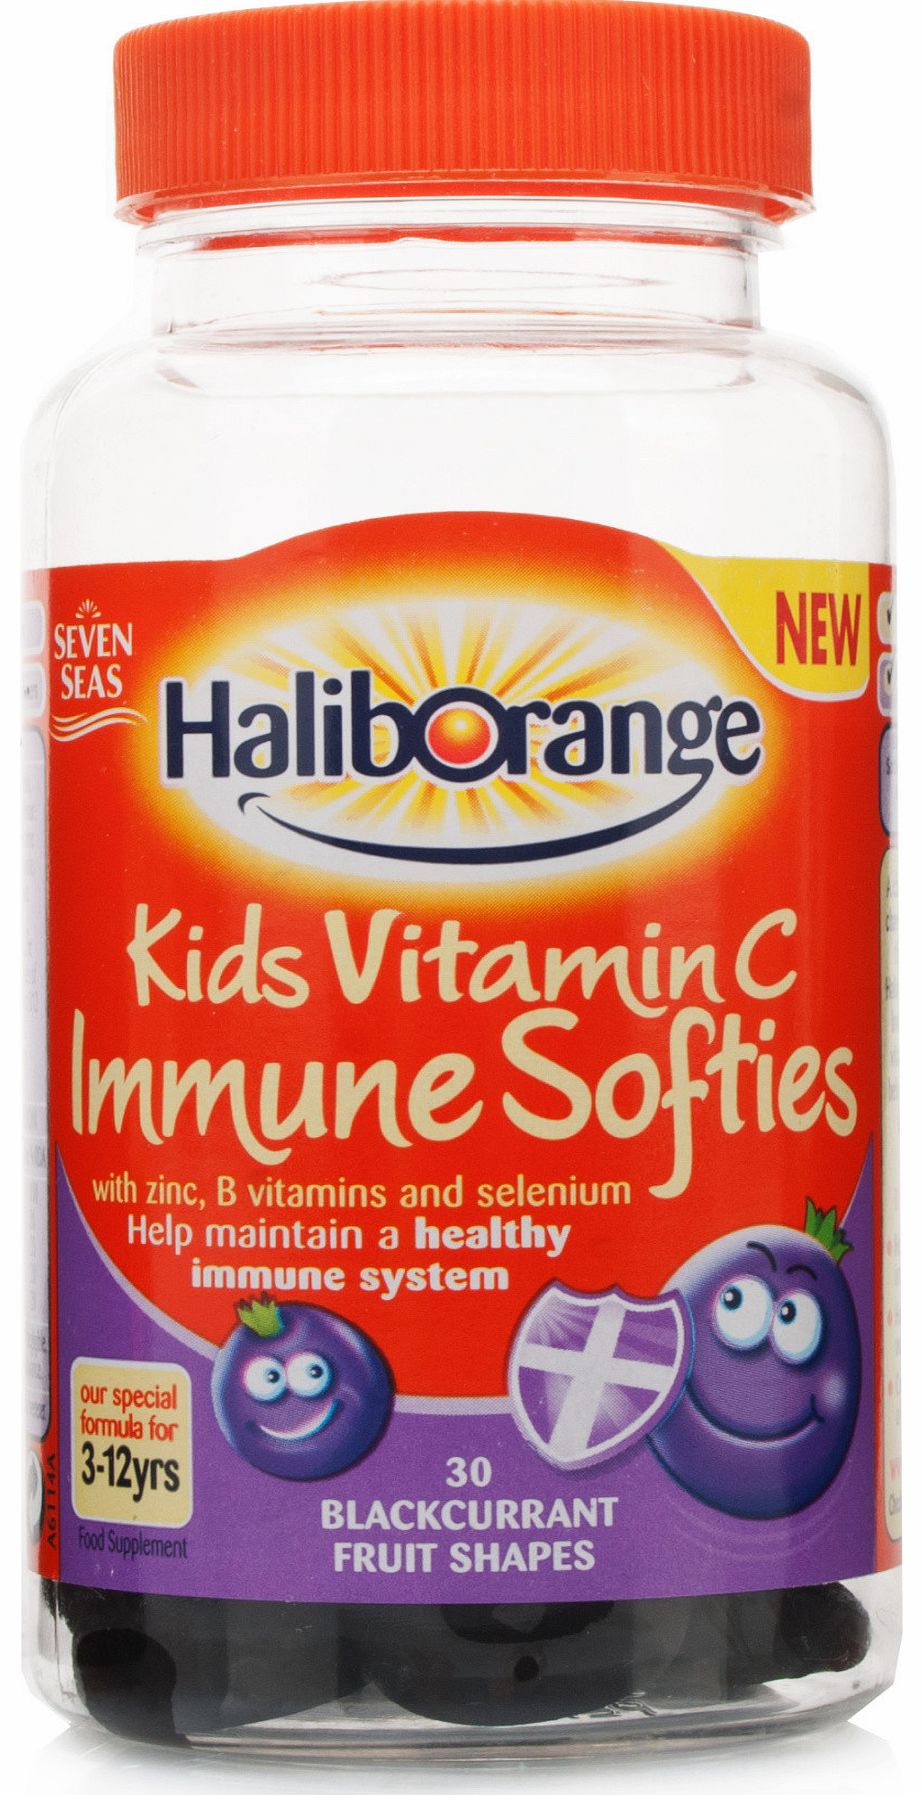 Kids Vitamin C Immune Softies